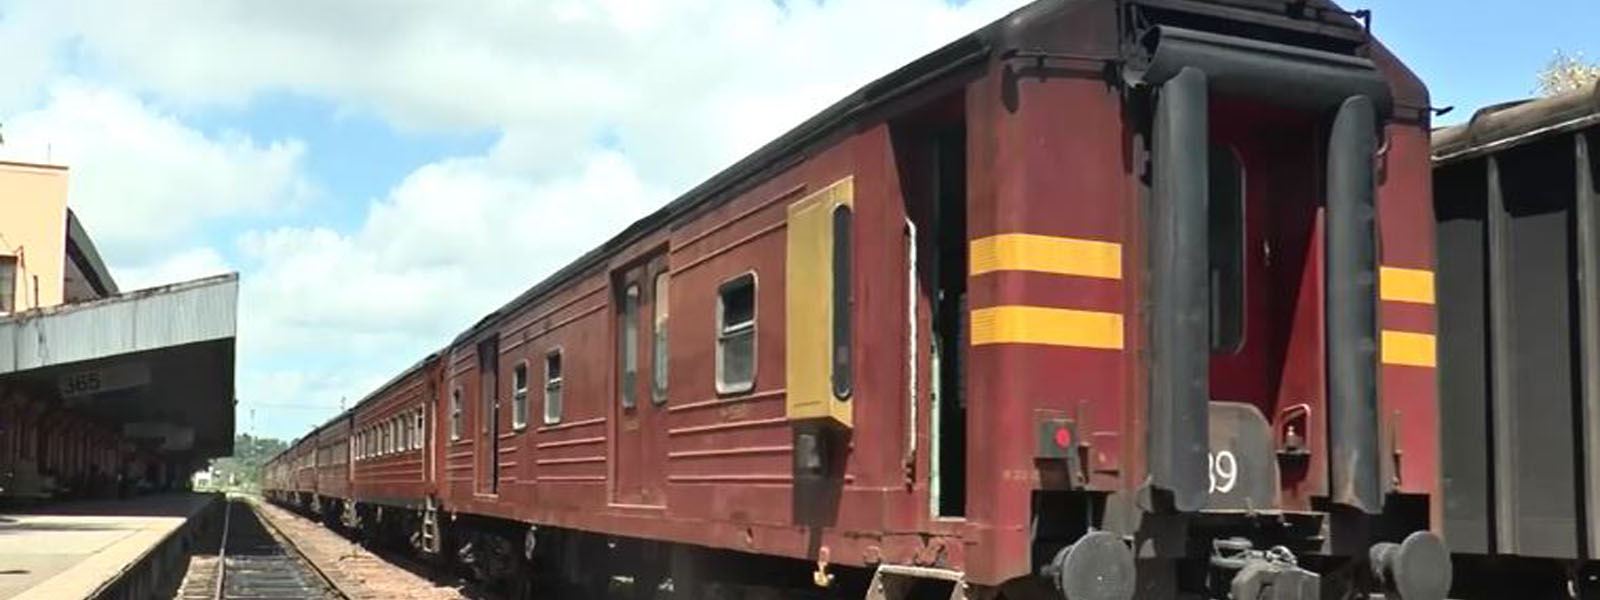 Trains sabotaged as railway workers strike